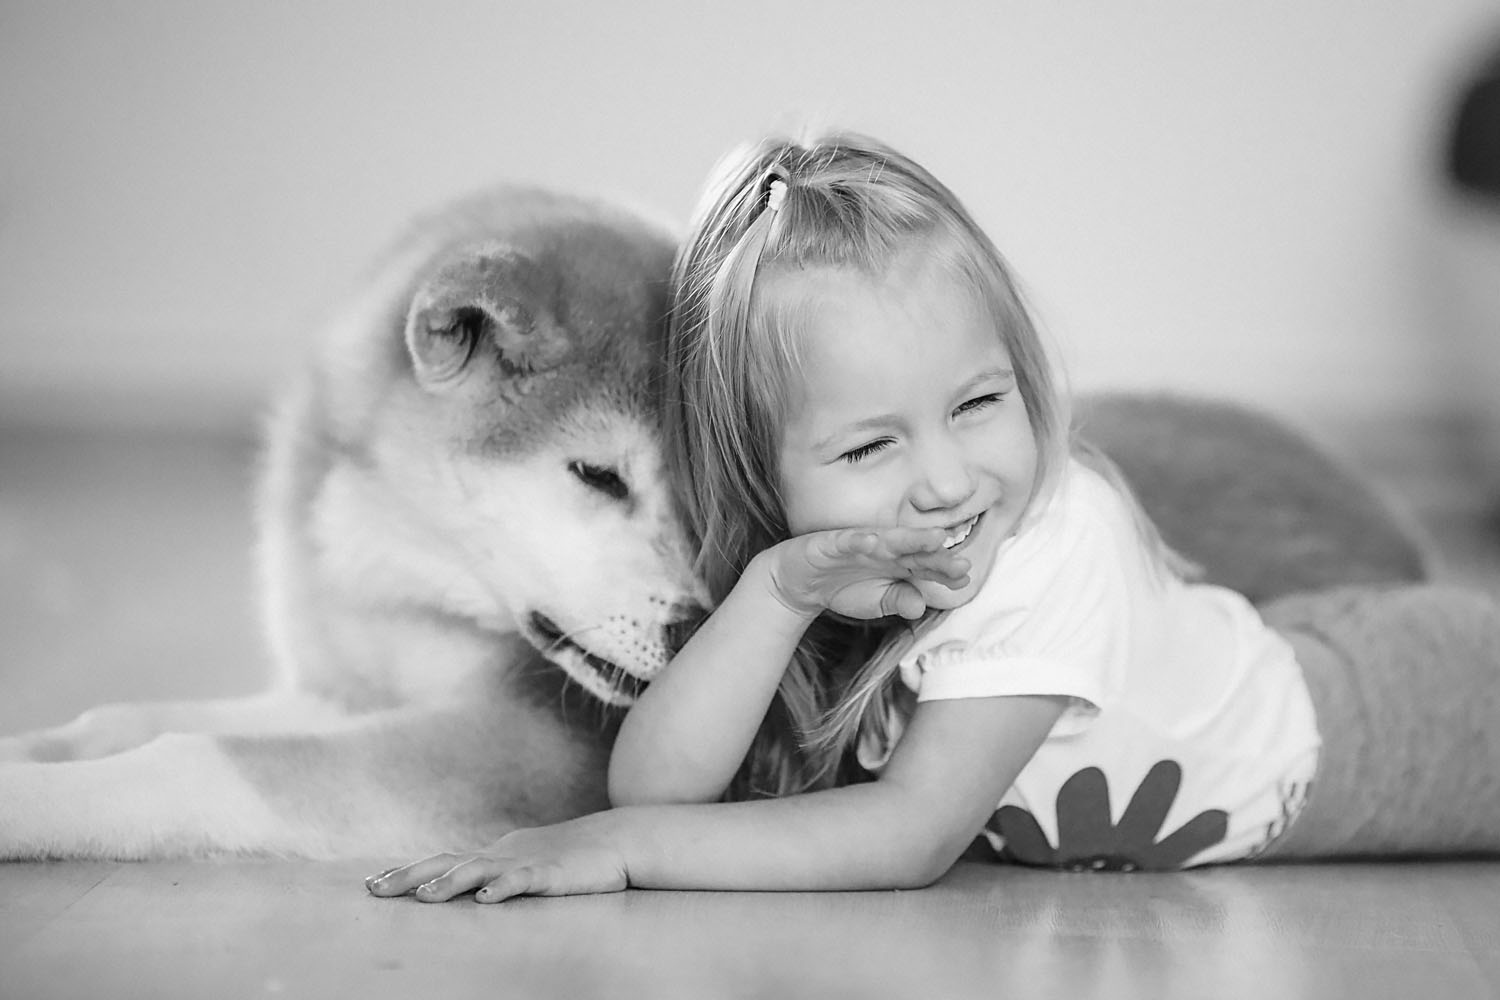 Хотим детские. Дочка 5 лет хочет собаку. Хочу дом дочку и собаку. Хочу собаку с 8 лет. Я хочу как девочки хочет собачка покупаешь.